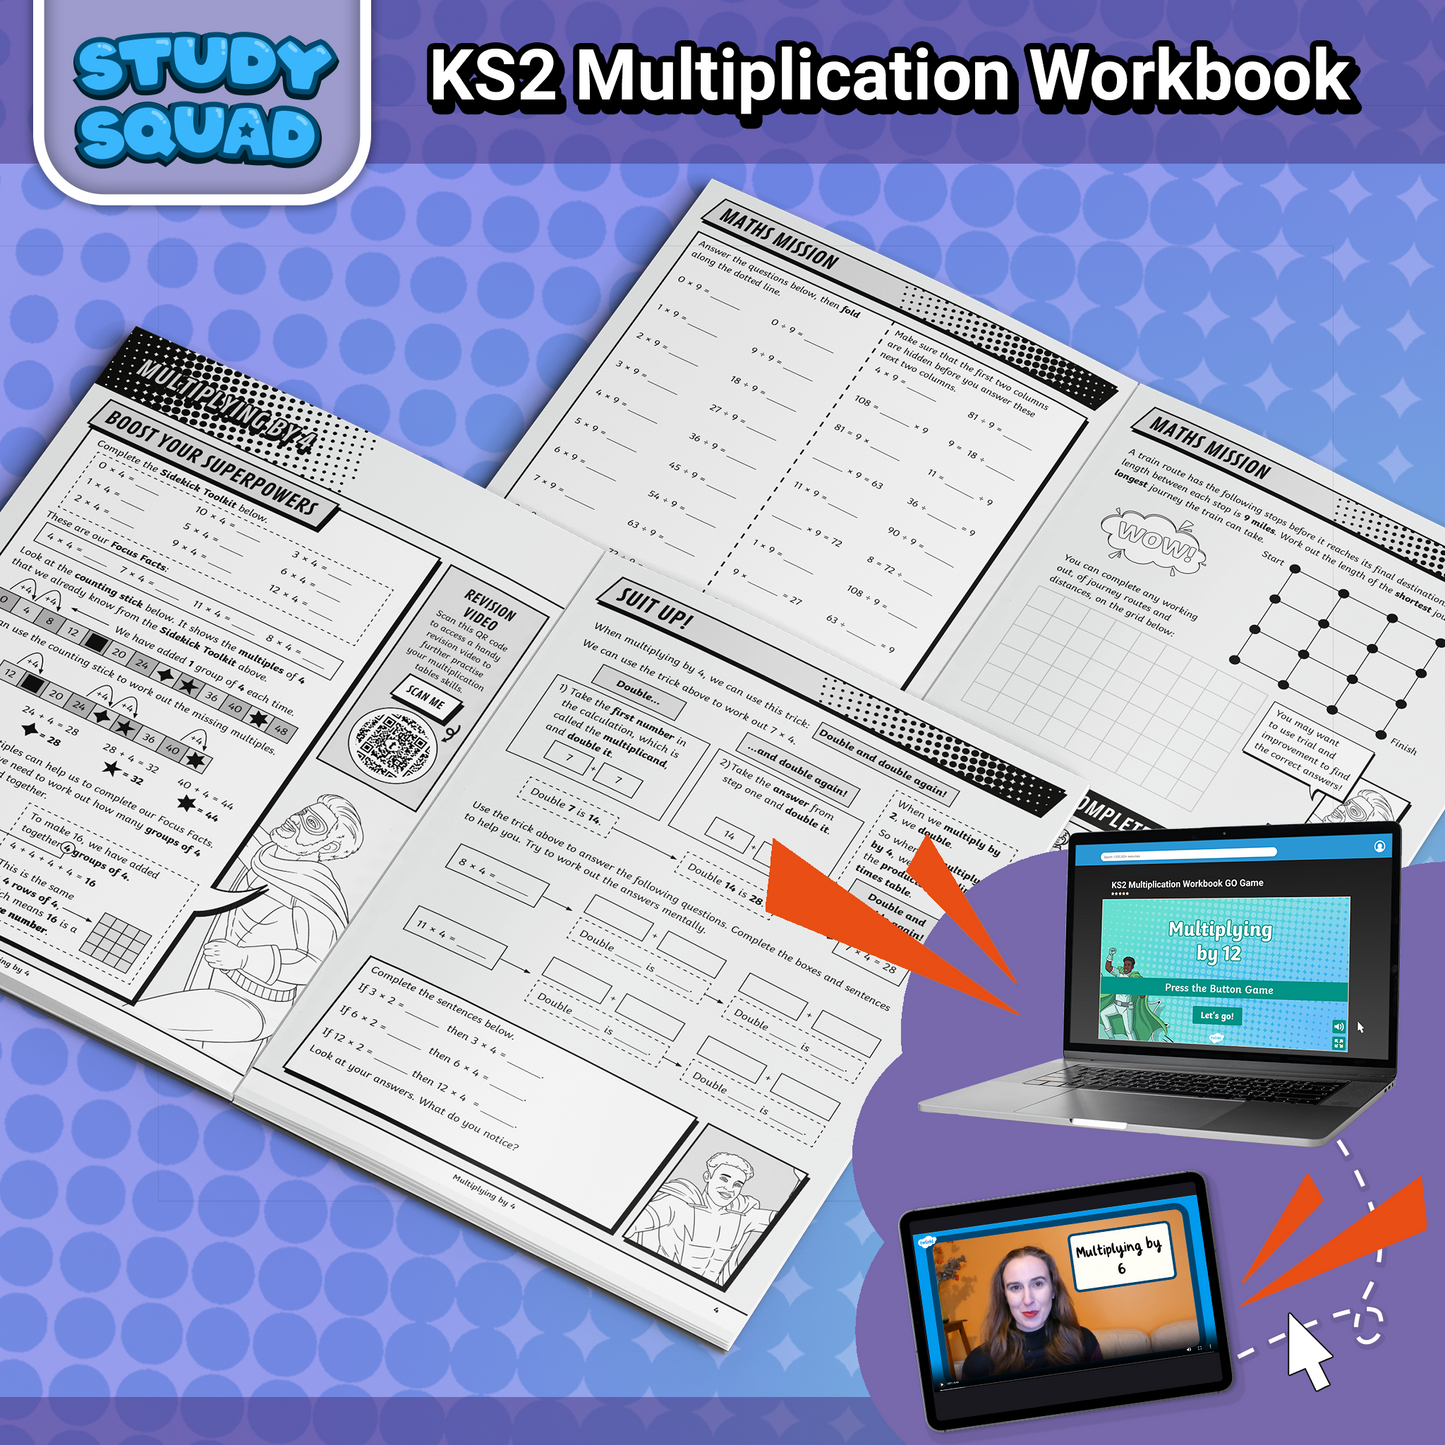 Study Squad KS2 Multiplication Workbook